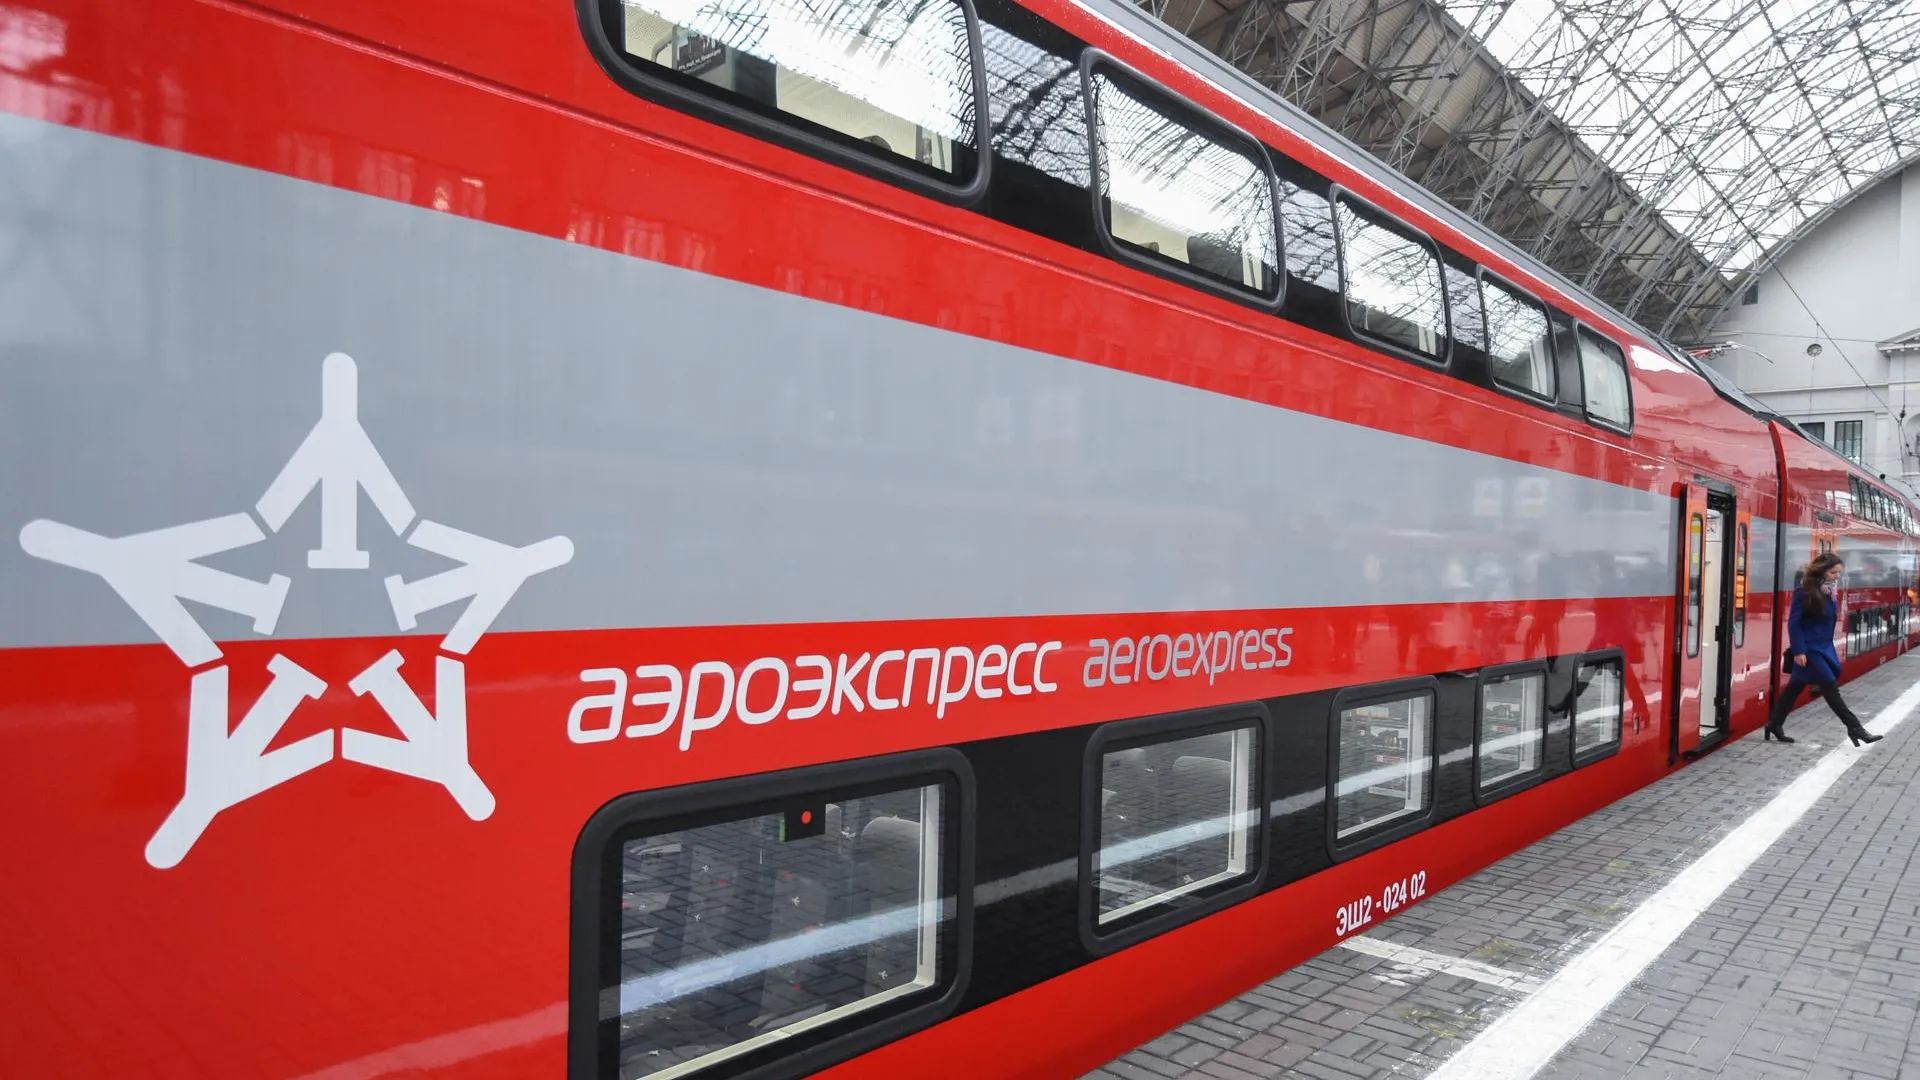 Поезда «Аэроэкспресс» продолжат курсировать в аэропорт Внуково